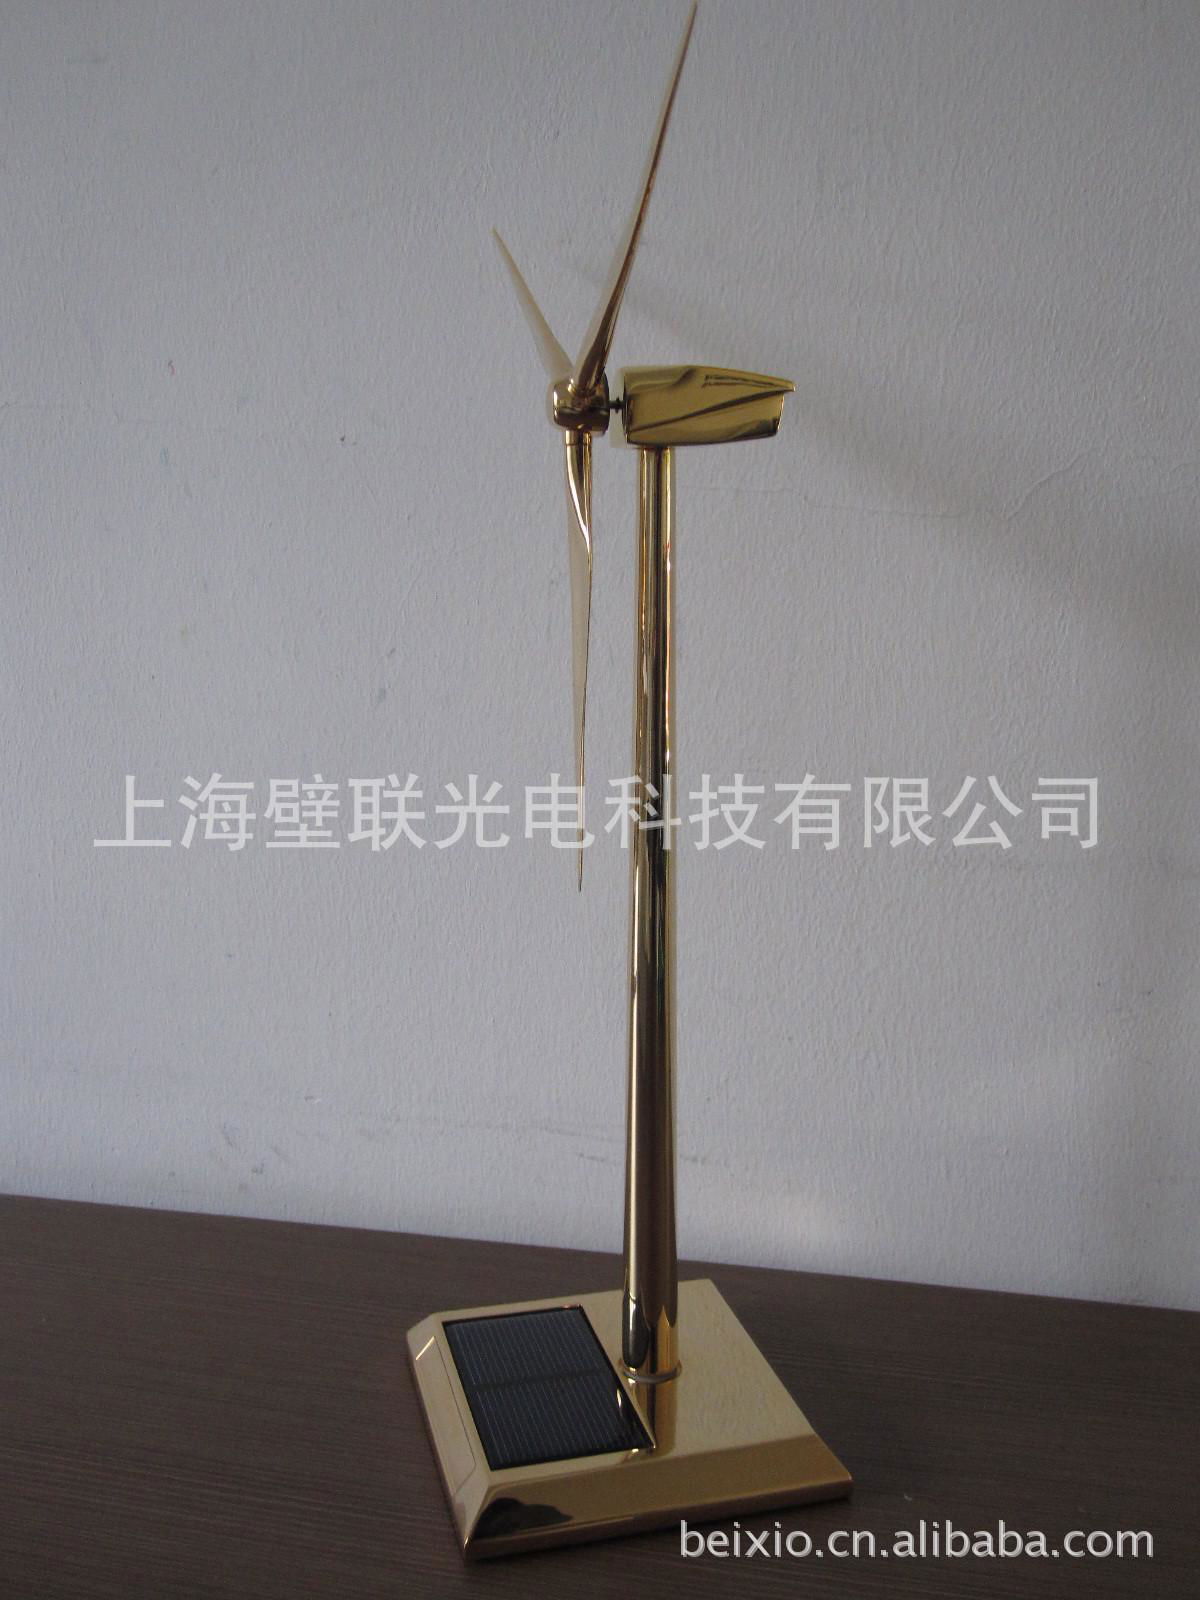 上海壁联个性化定制风电礼品模型 4